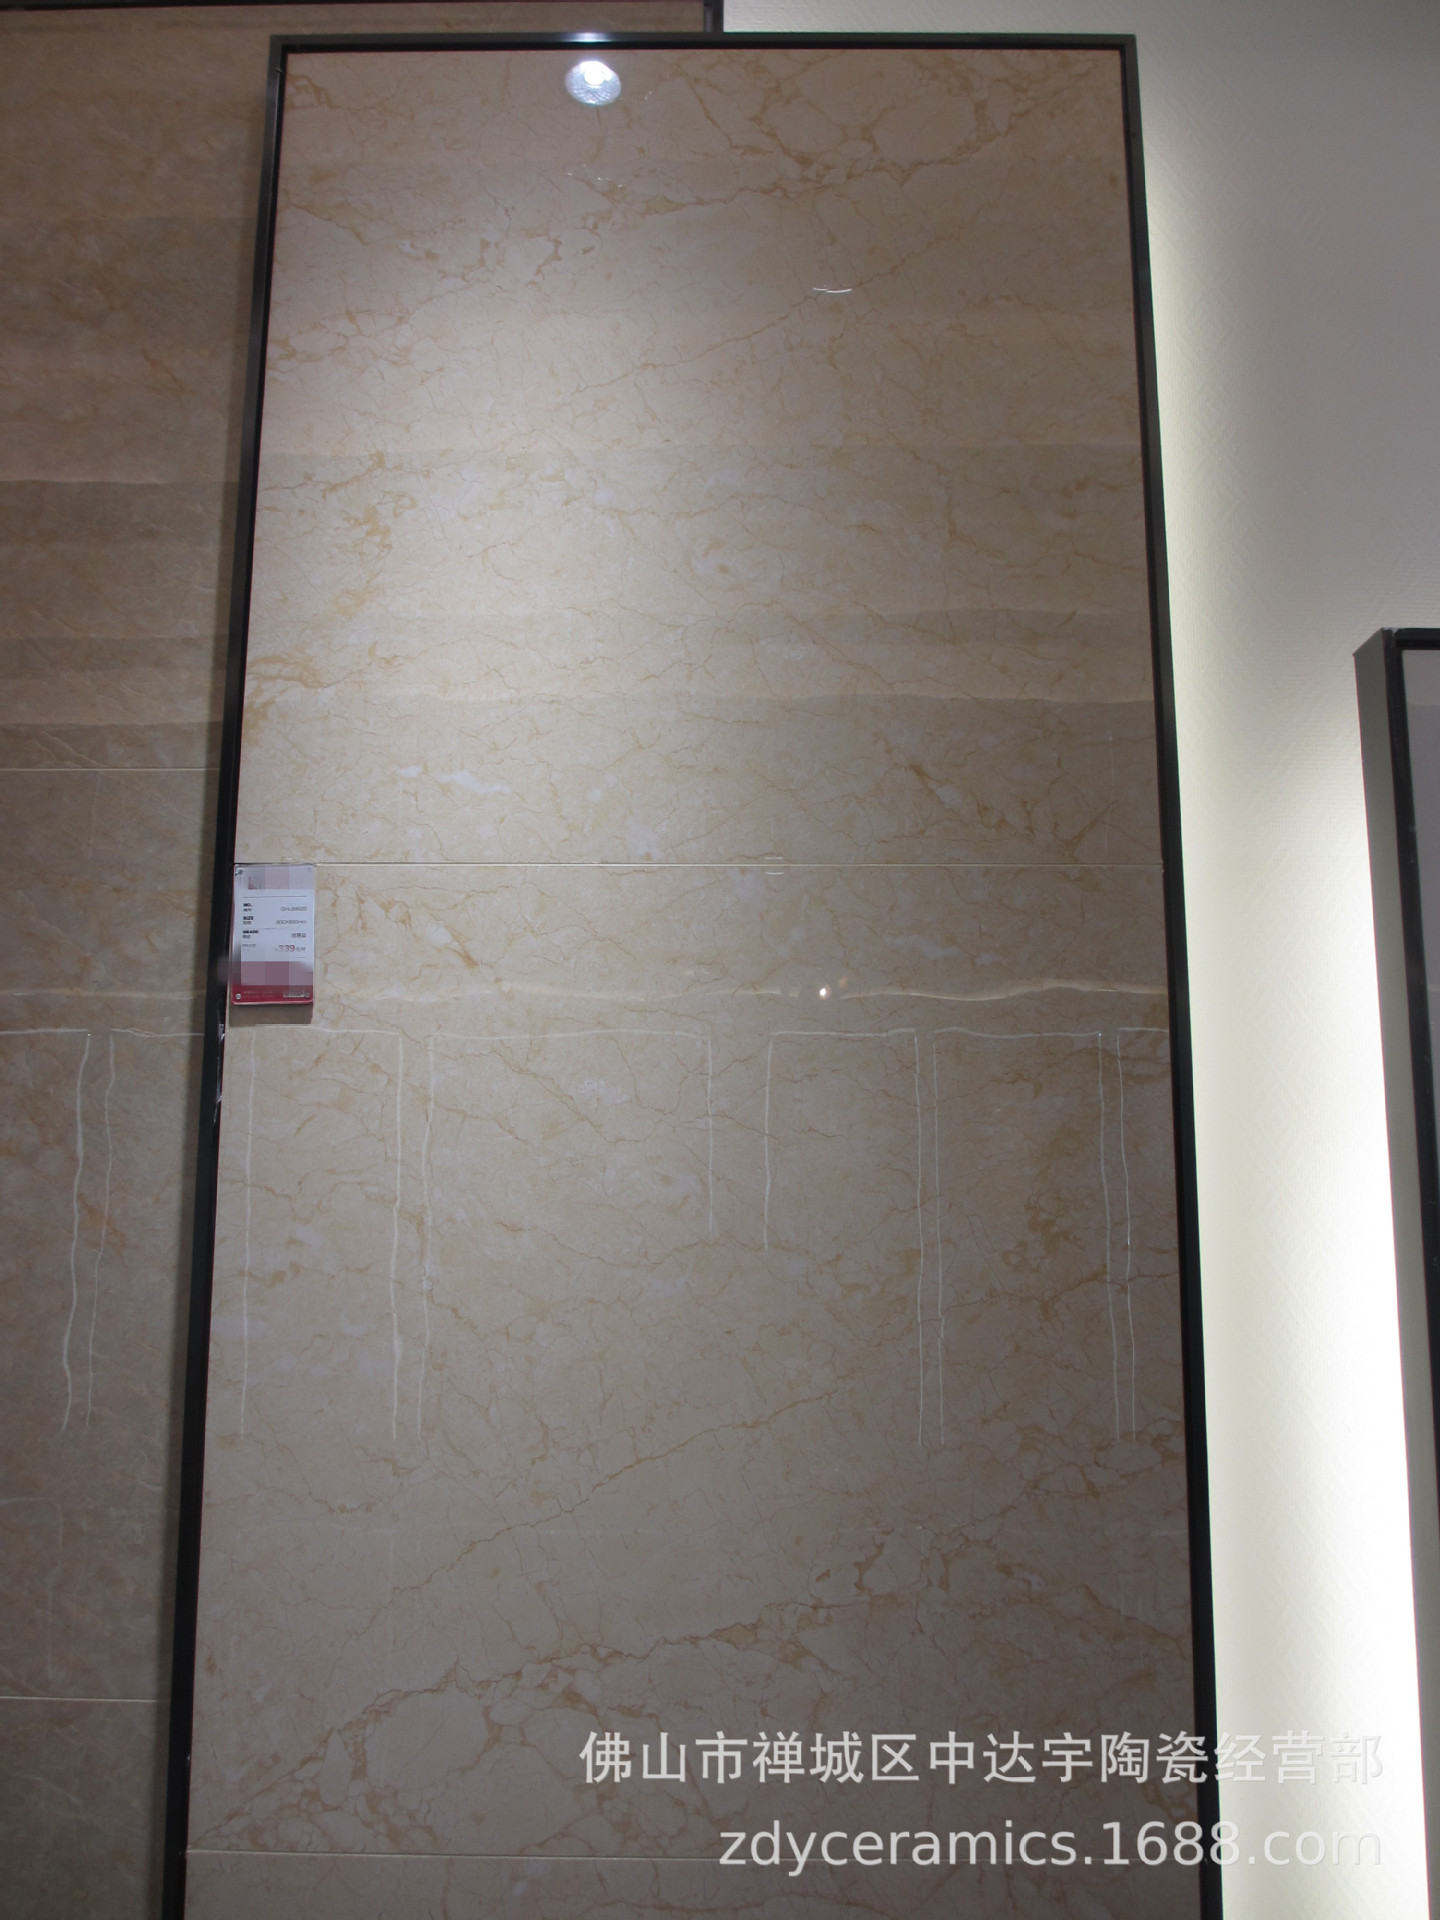 佛山Z客厅地板砖负离子工程大理石瓷砖800X800MM地面砖浴室墙面砖示例图6